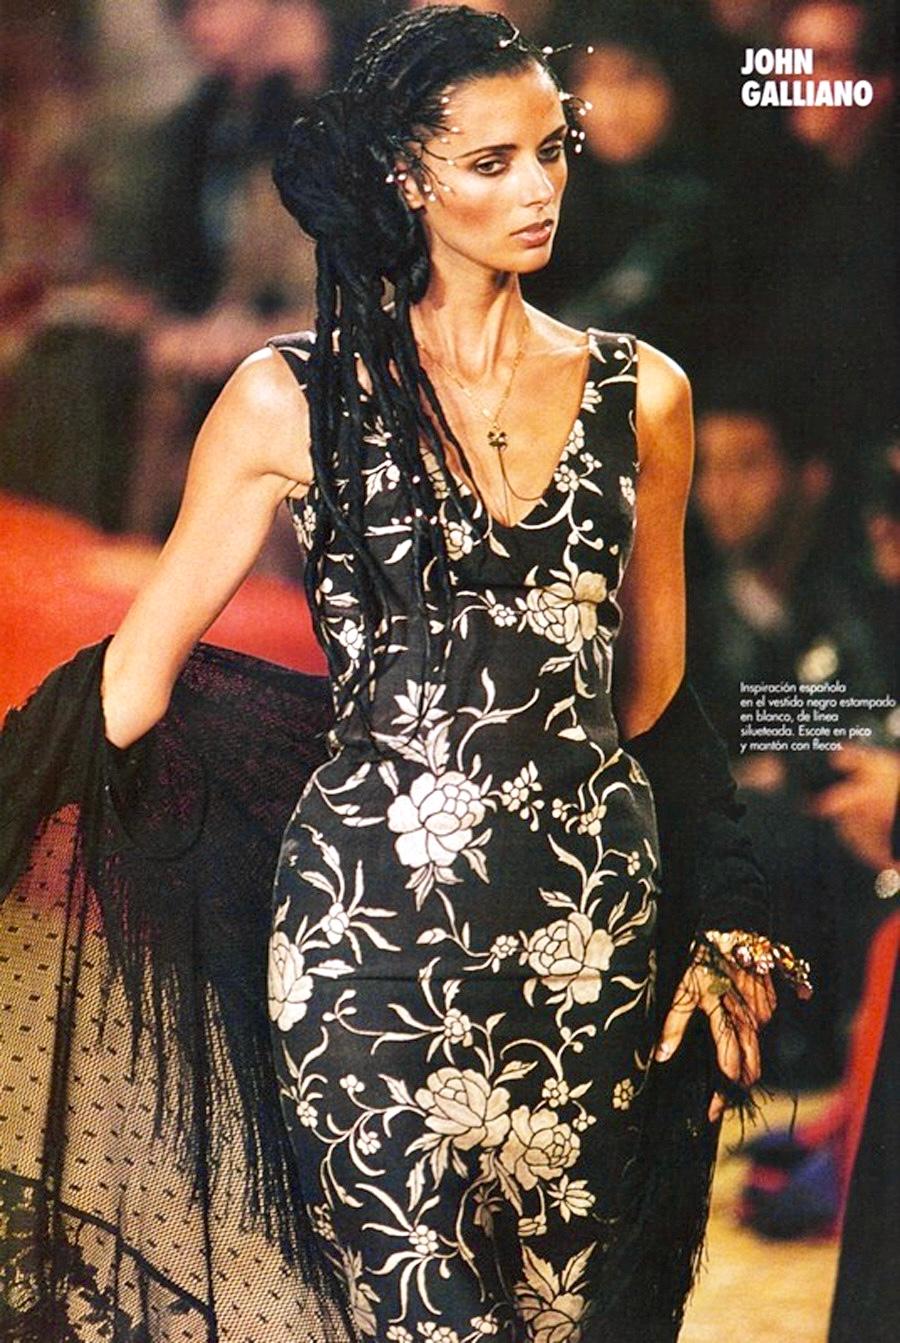 Voici un superbe châle John Galliano en dentelle noire de style flamenco. Issue de la collection printemps/été 1997, cette incroyable veste à châle a fait ses débuts sur les podiums de la saison. Entièrement réalisé en dentelle complexe, ce châle